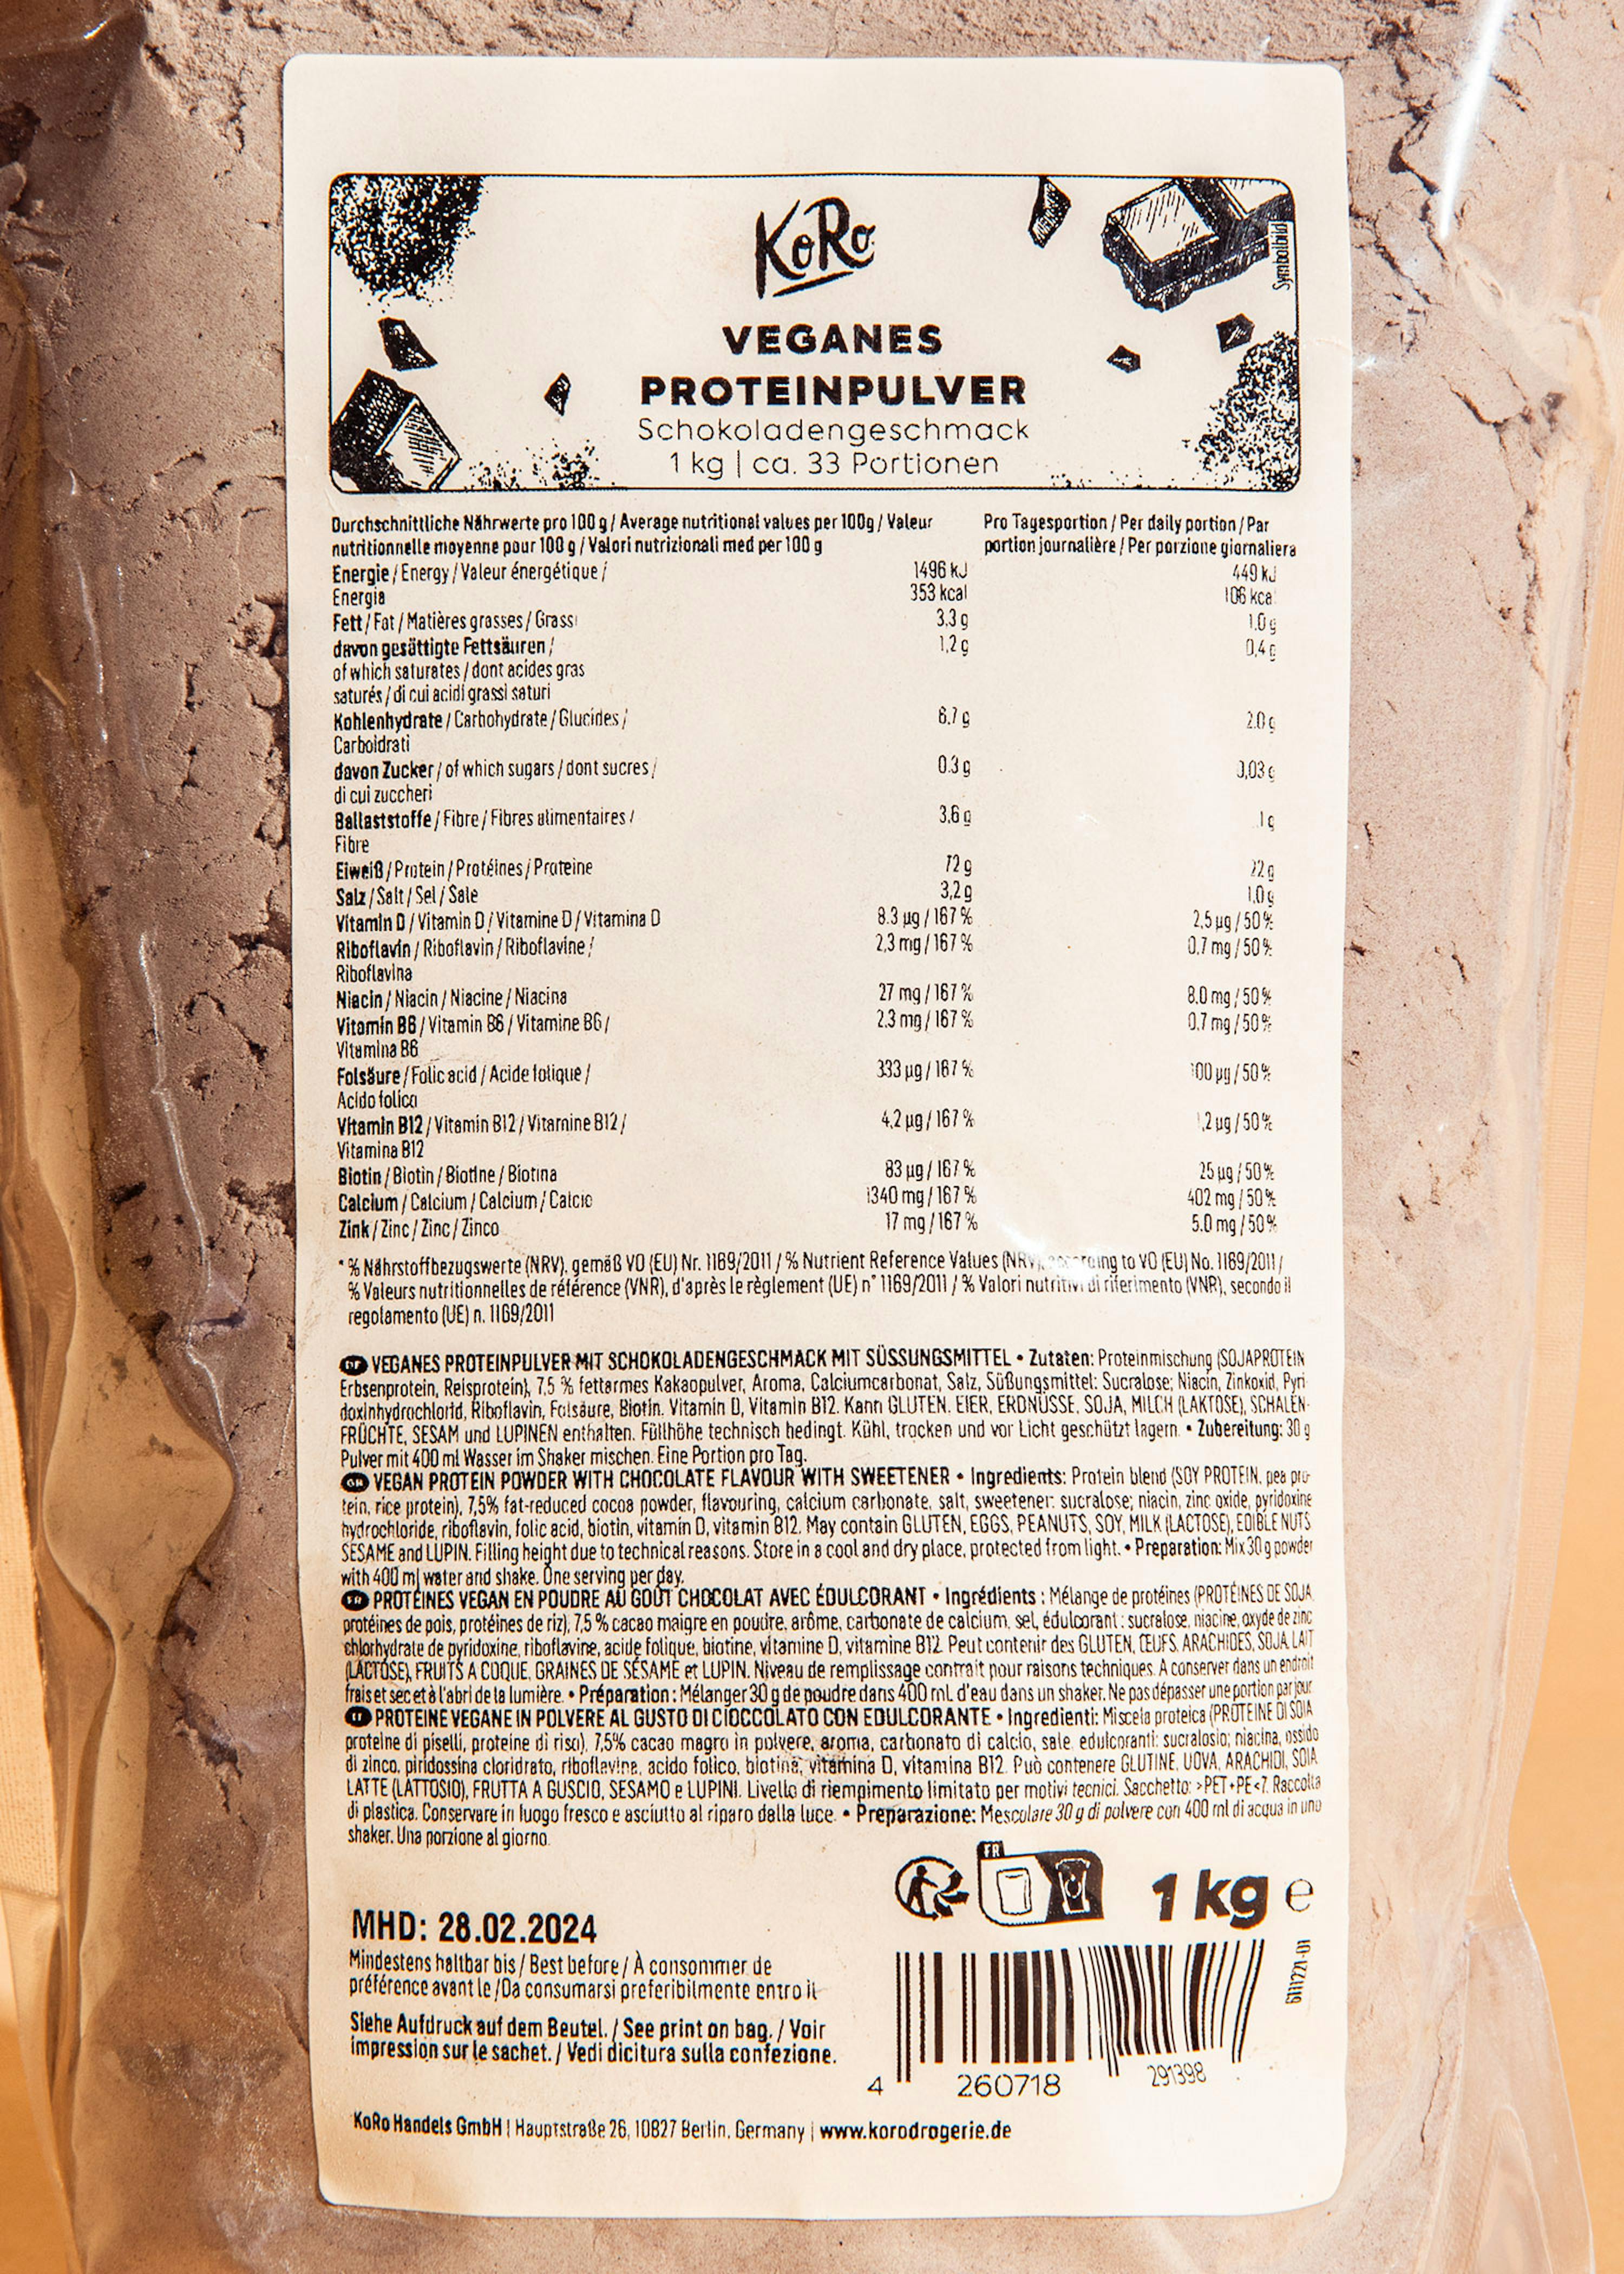 Sports, Protéines de blanc d'œuf, Poudre de protéines, 544 g